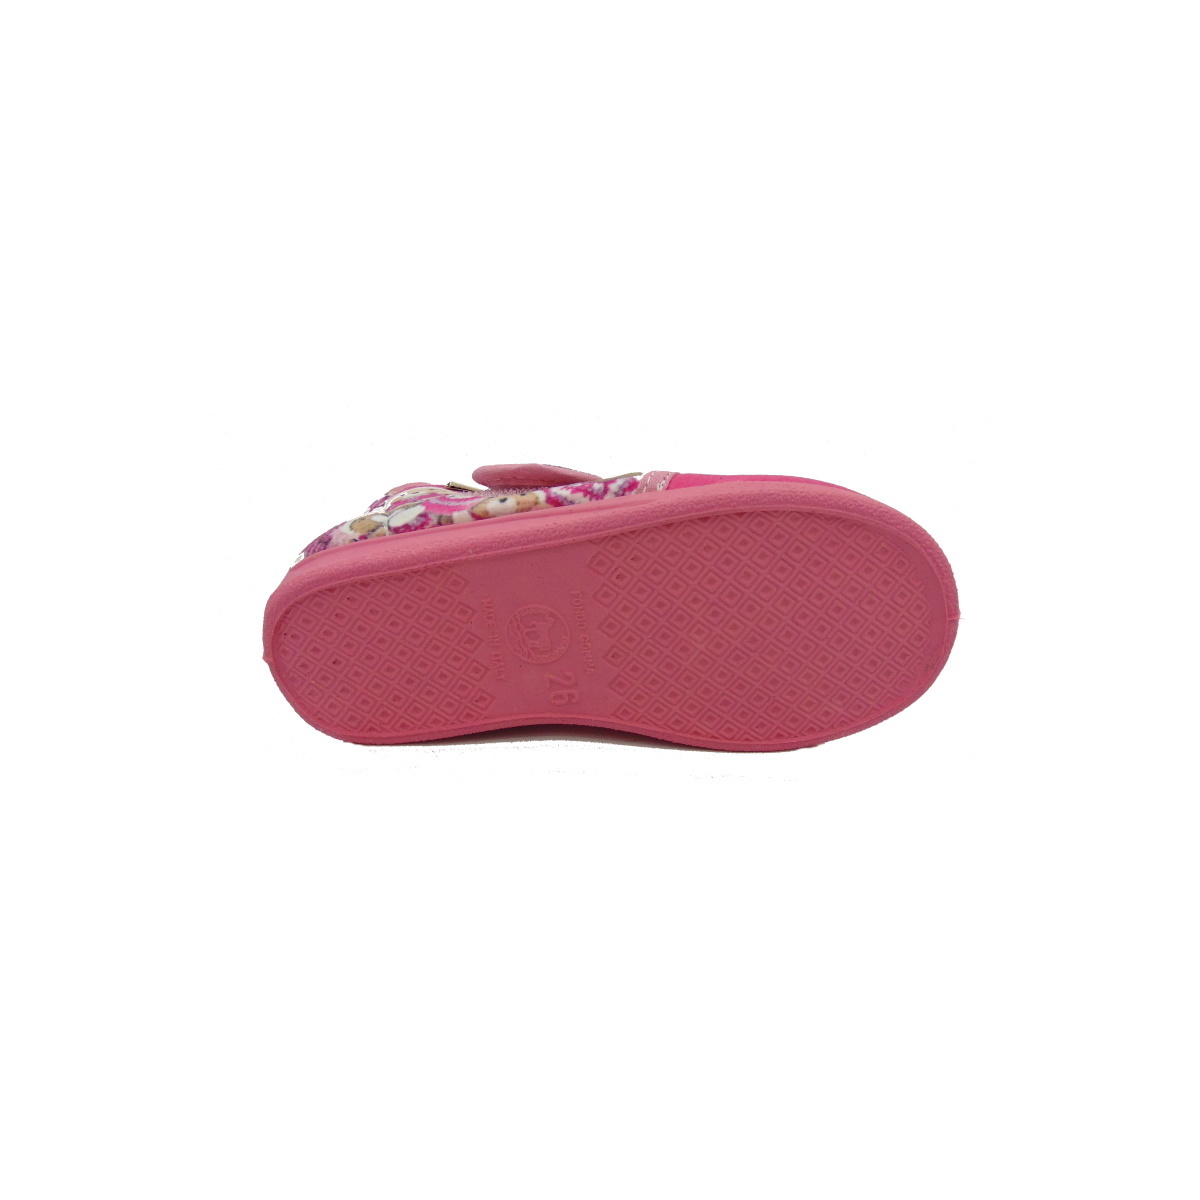 Pantofola BIMBA Emanuela articolo 419 colore ROSA con strappo, fondo in gomma e soletta estrabile in VERO CUOIO.img_4